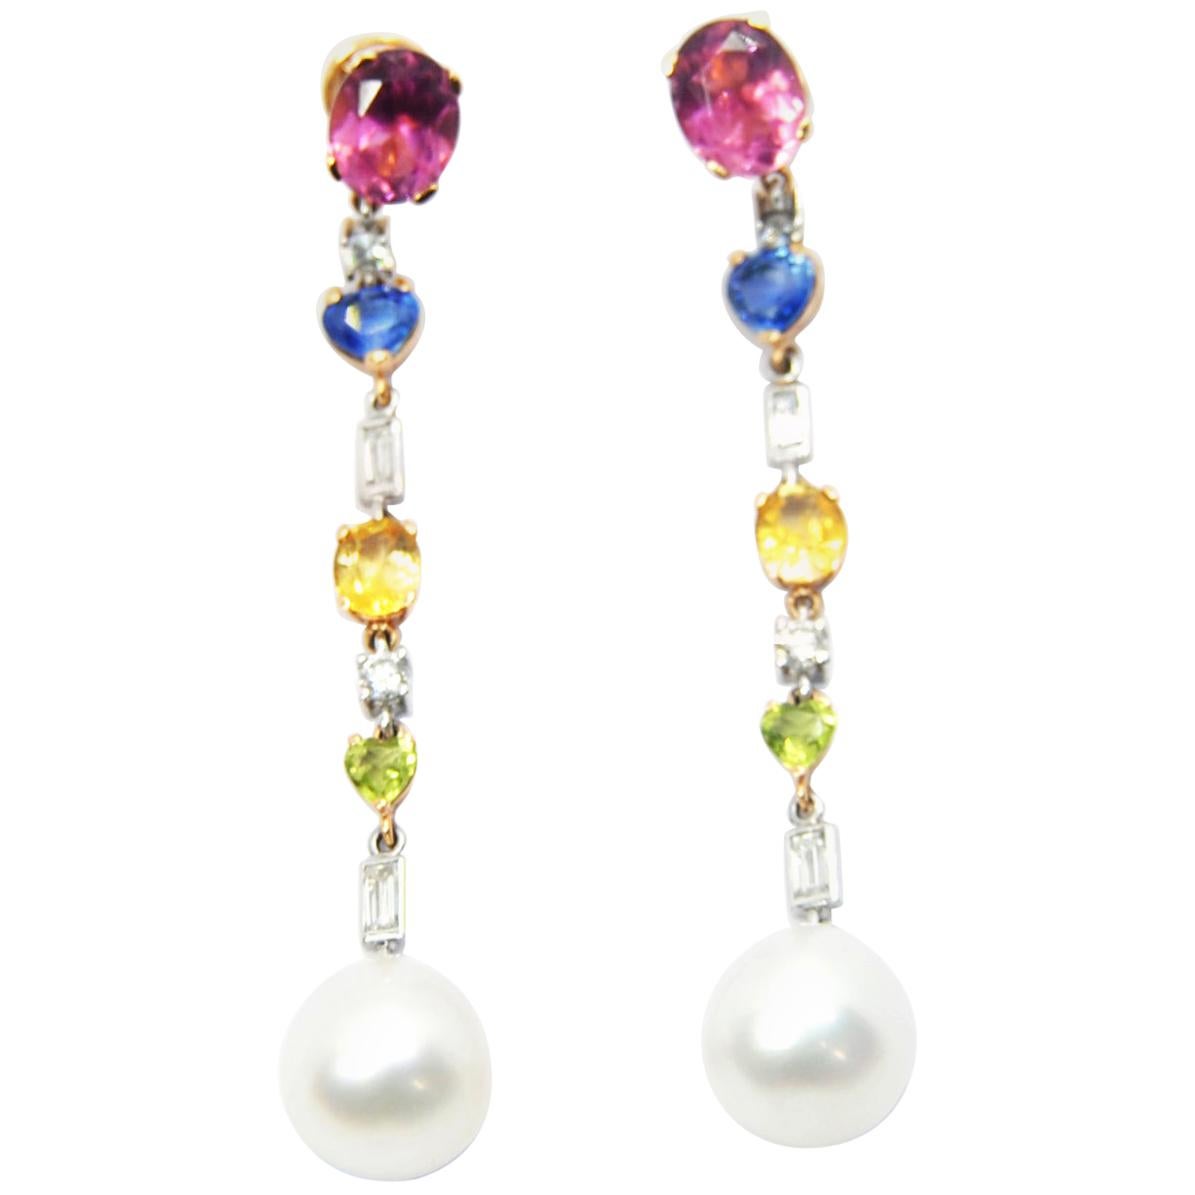 Boucles d'oreilles lustre perles des mers du Sud en or 18 carats, diamants et pierres précieuses